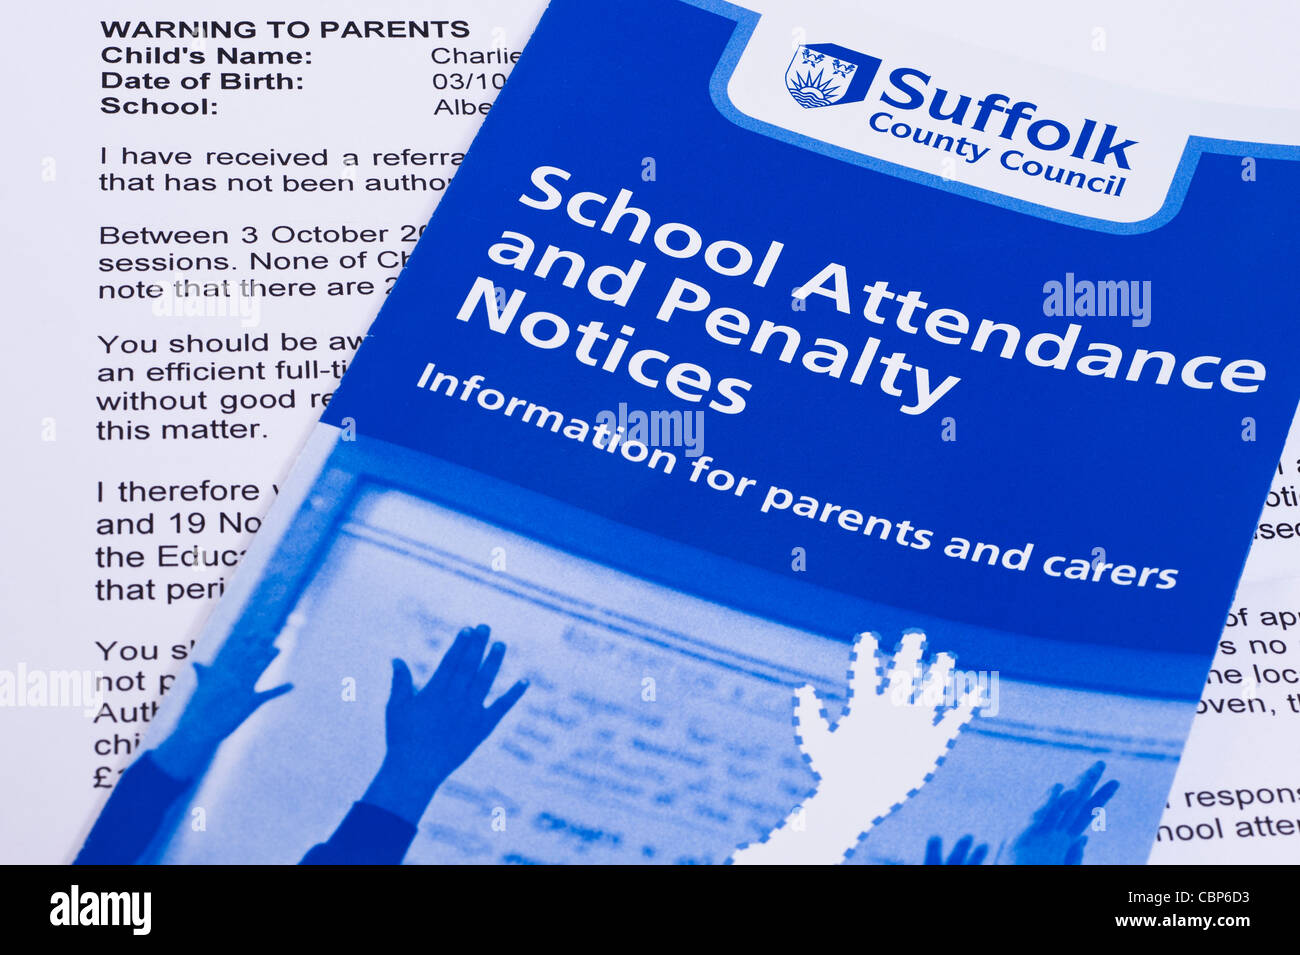 Una lettera di avvertimento inviata da un consiglio ai genitori di prendere i loro figli a scuola per una vacanza che minacciano di ammenda loro £50 Foto Stock